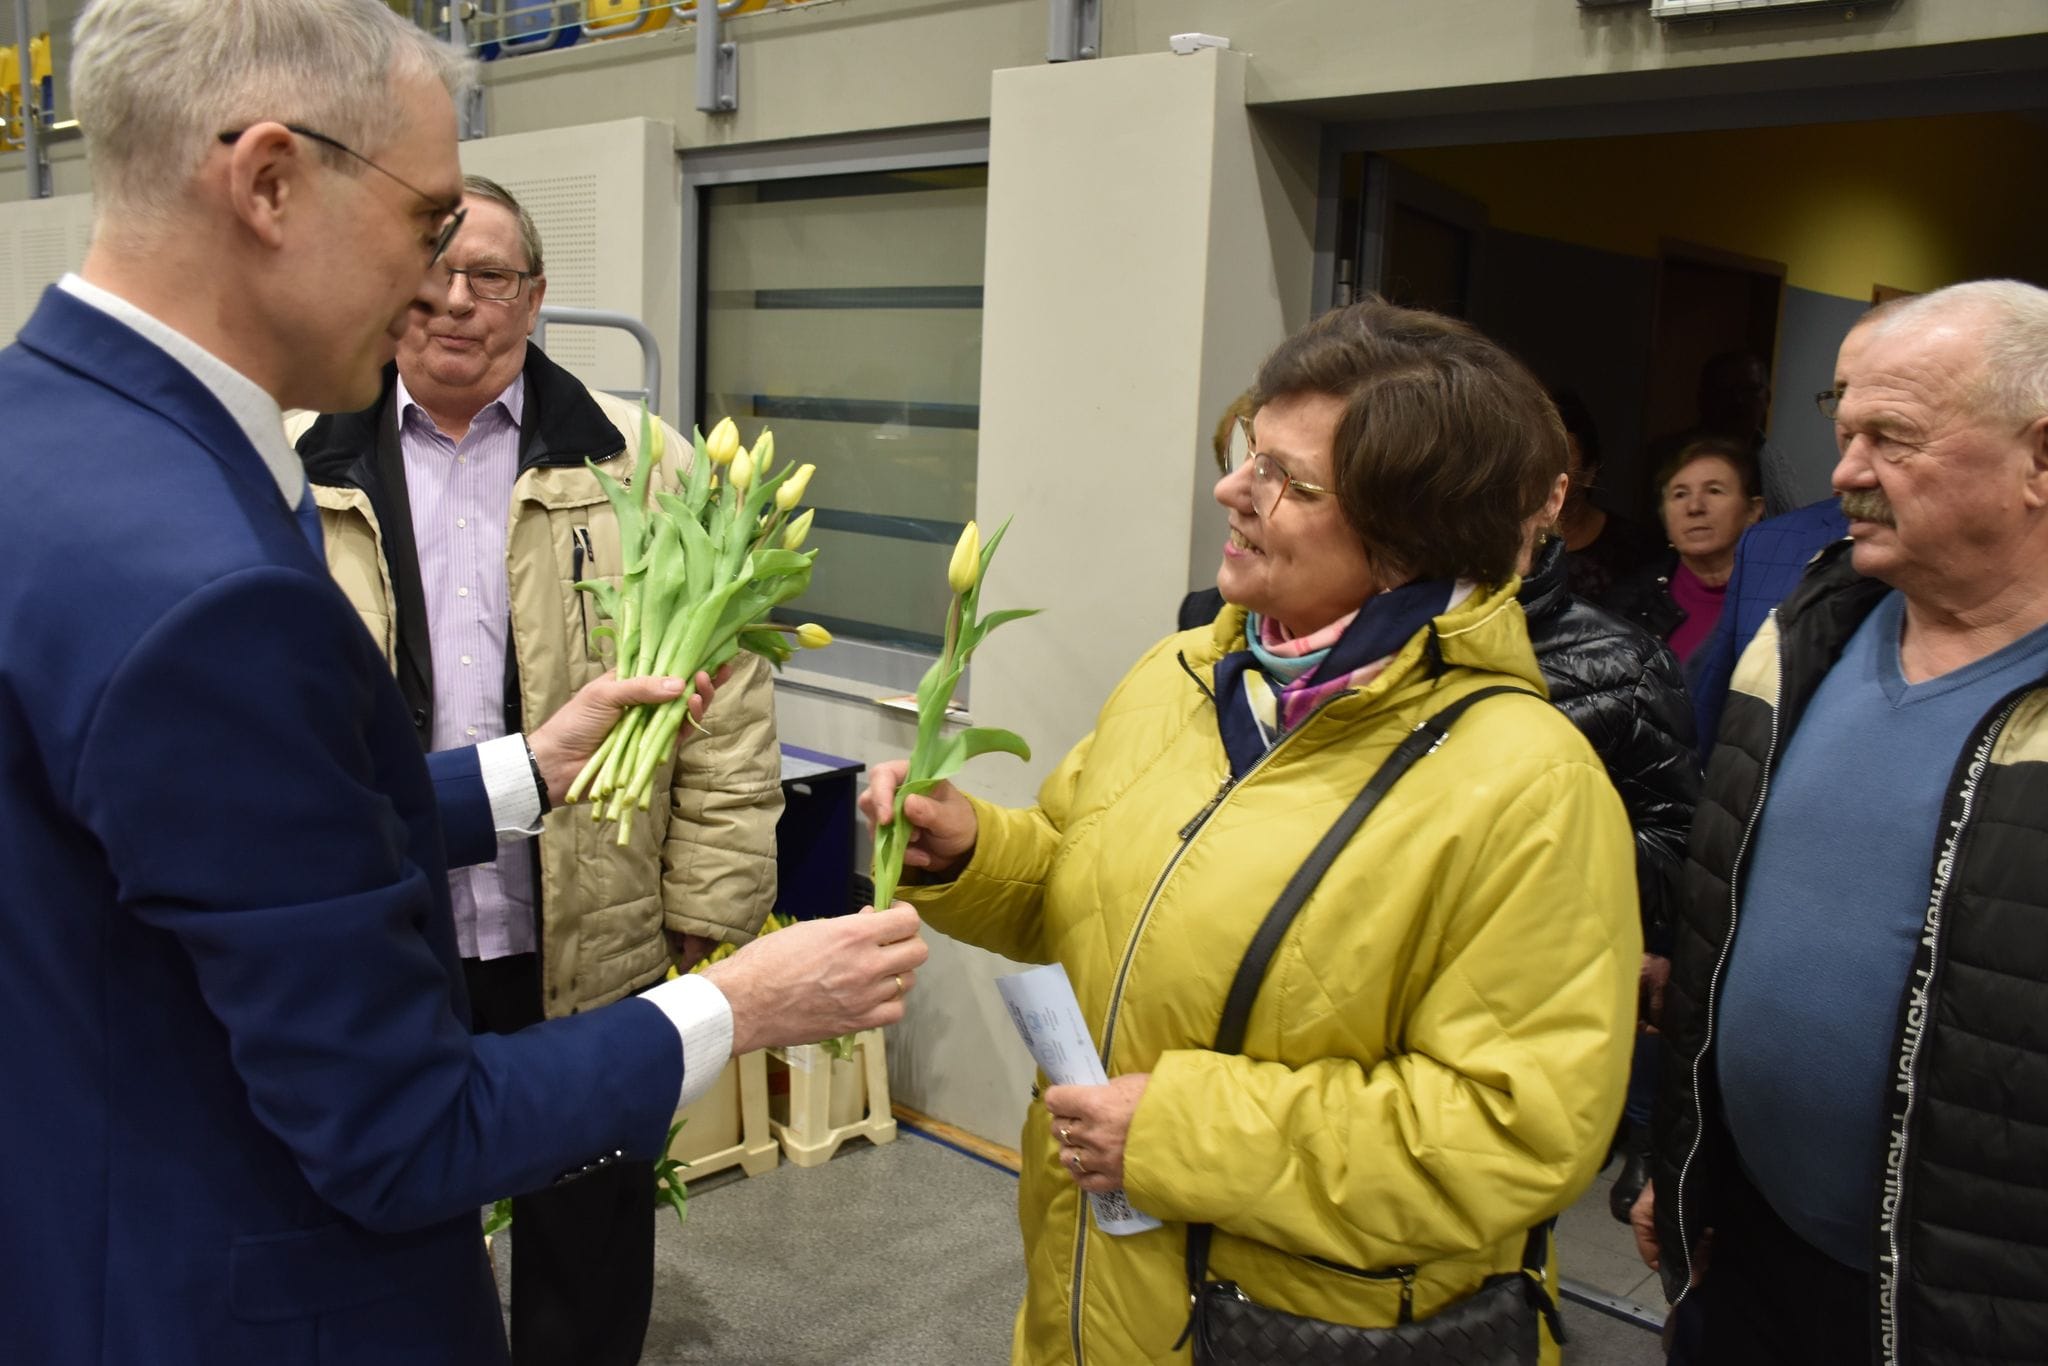 Burmistrz wręczający kwiaty na koncercie z okazji Dnia Kobiet na hali widowiskowo-sportowej w Pleszewie.